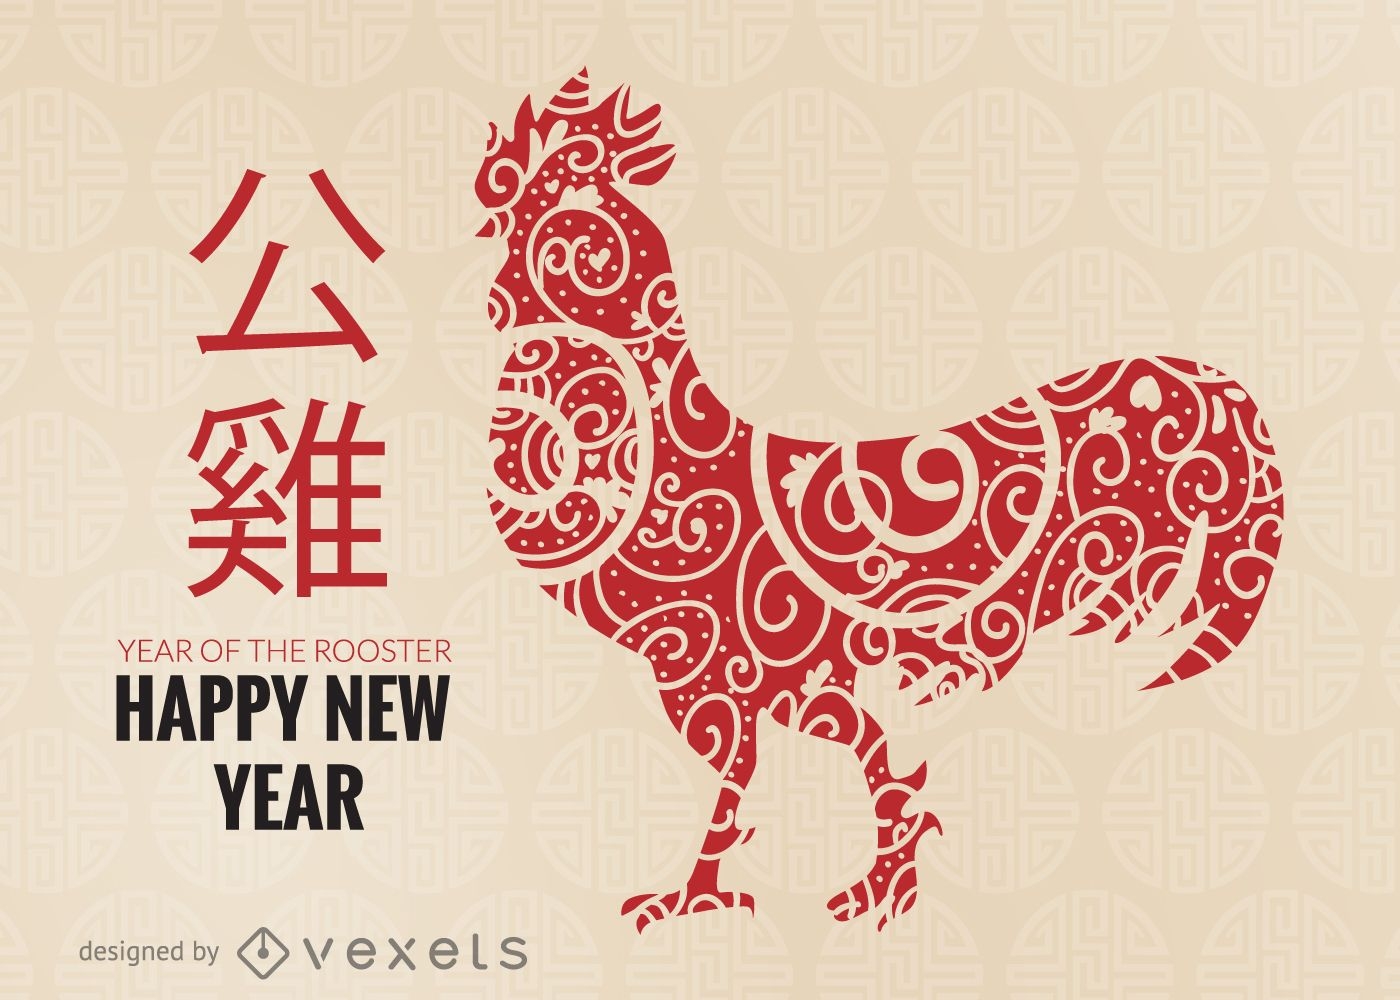 Celebraciones del año nuevo chino 2017